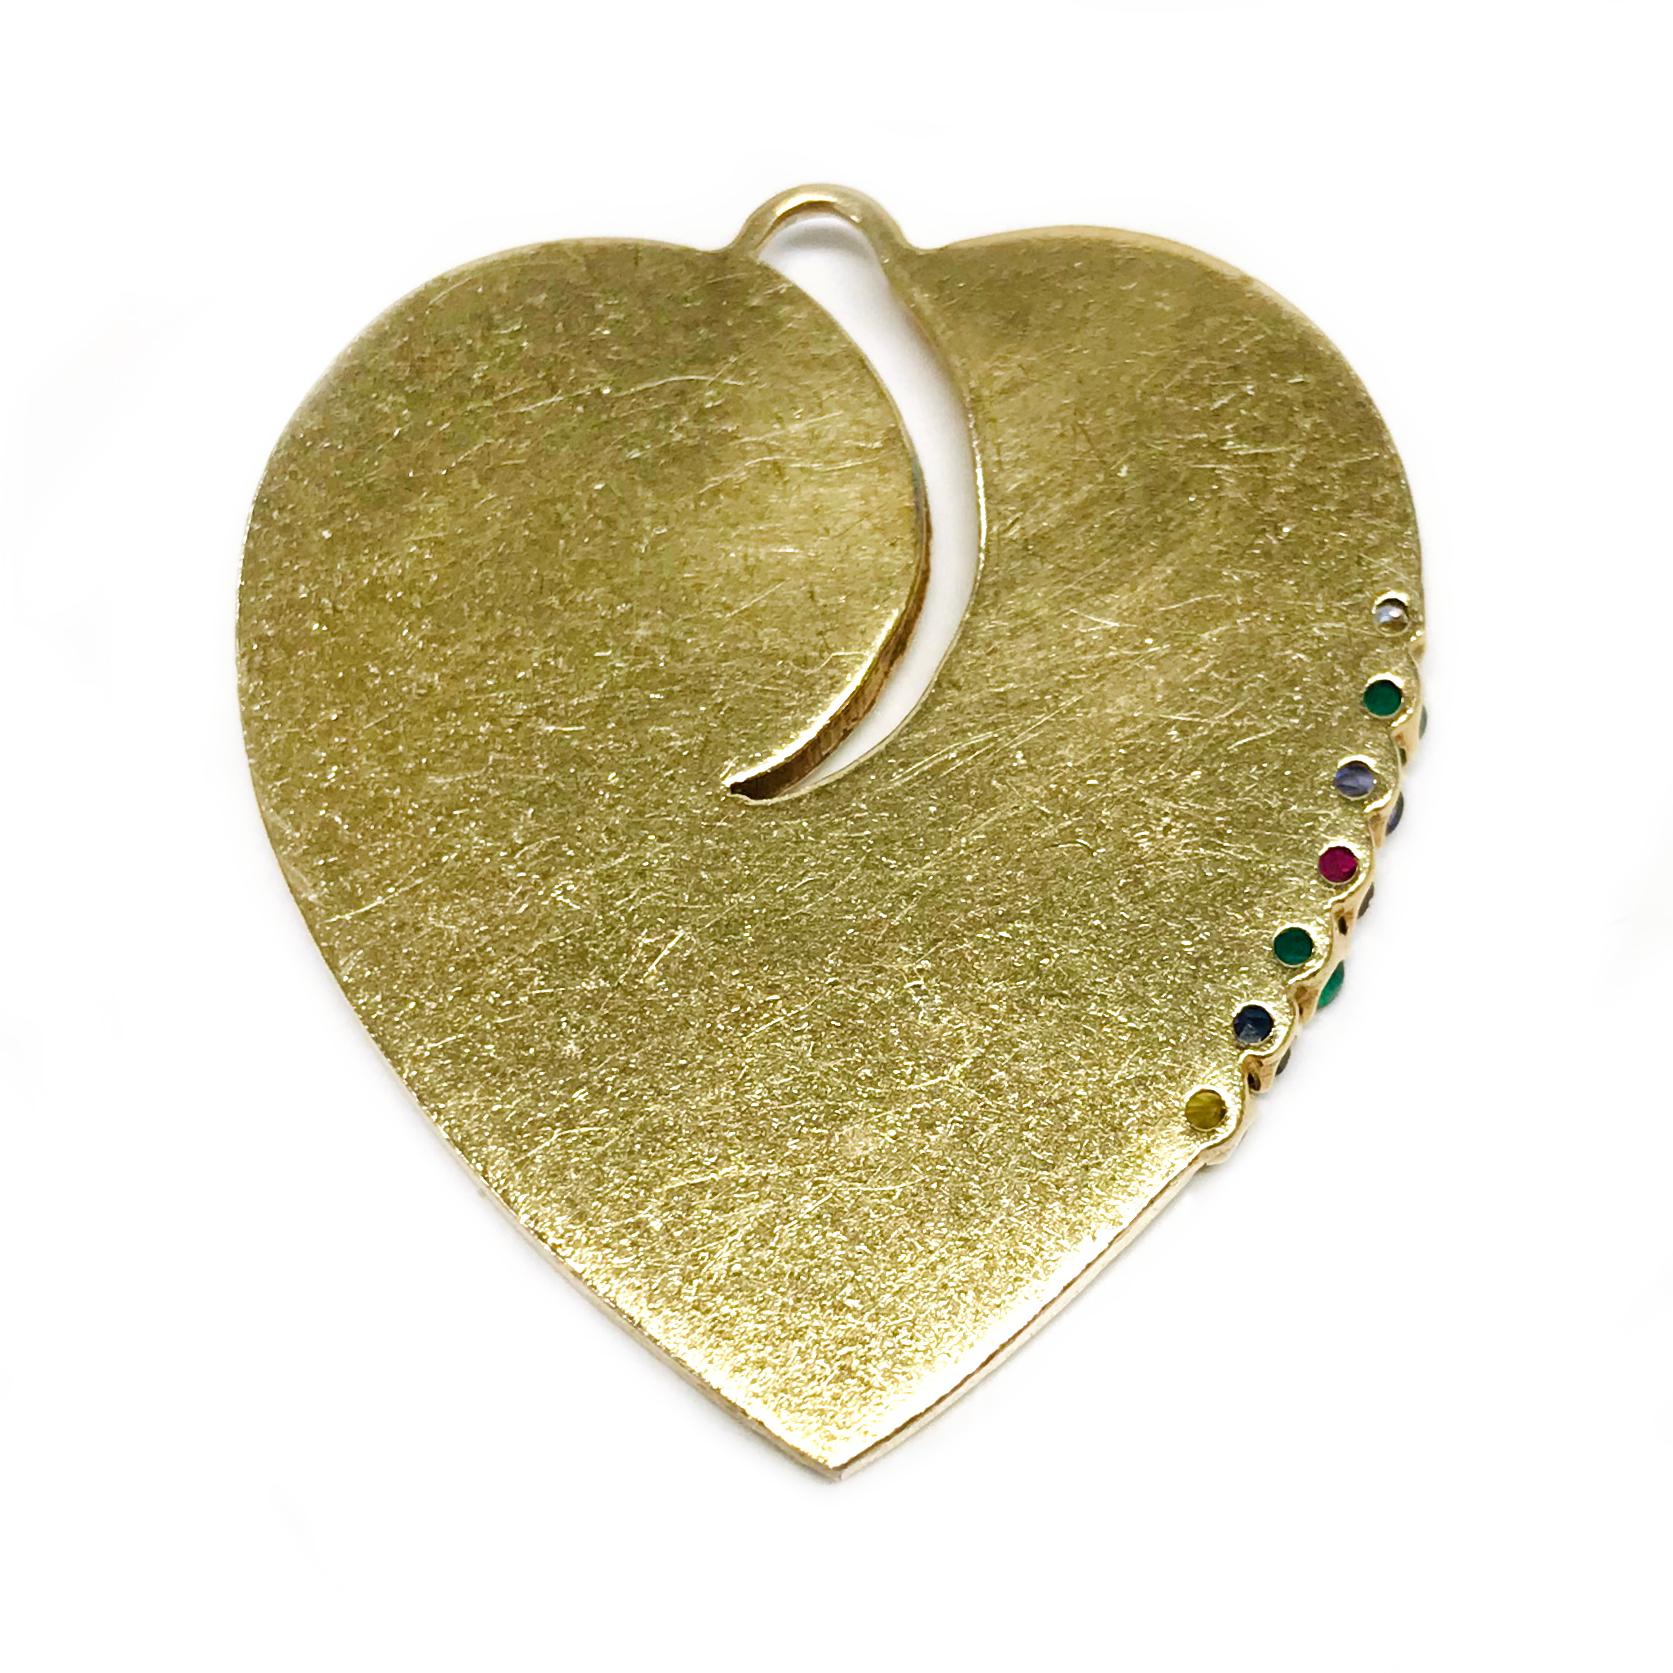 heart shape stone pendant